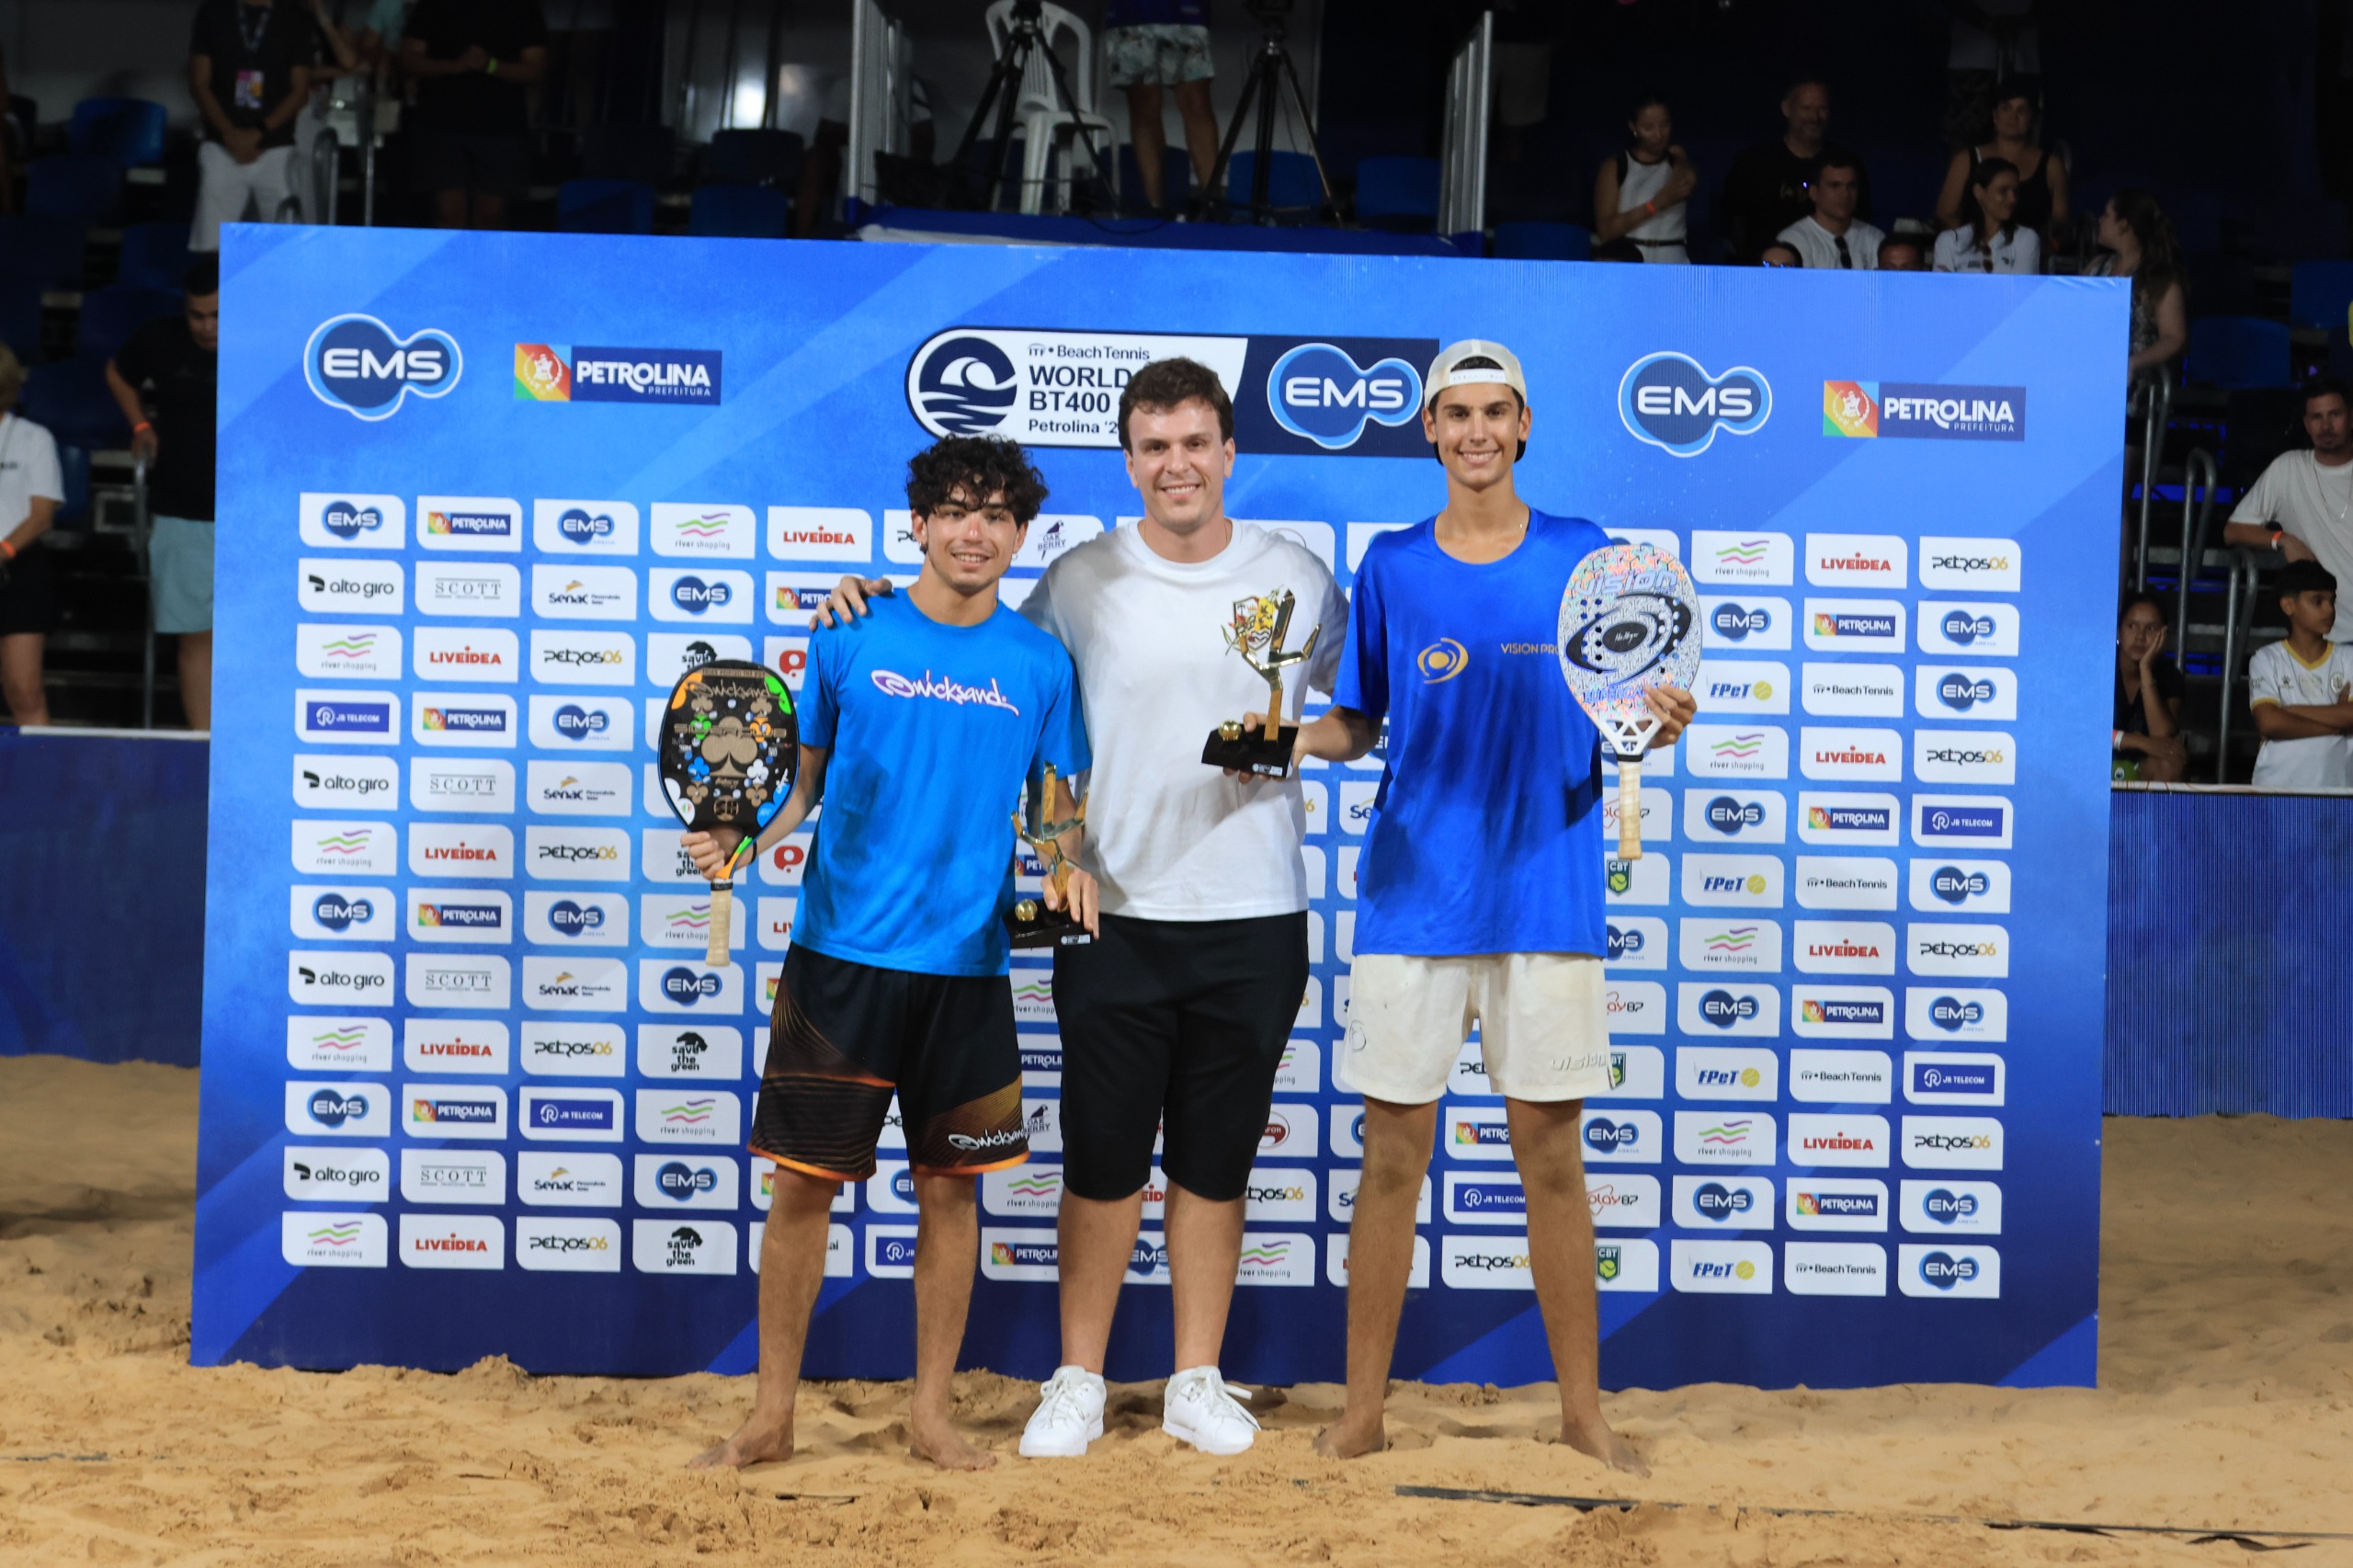 Jovem gaúcho Felipe Loch faz história, derruba campeões mundiais e conquista o título do EMS Open de Beach Tennis, em Petrolina (PE)